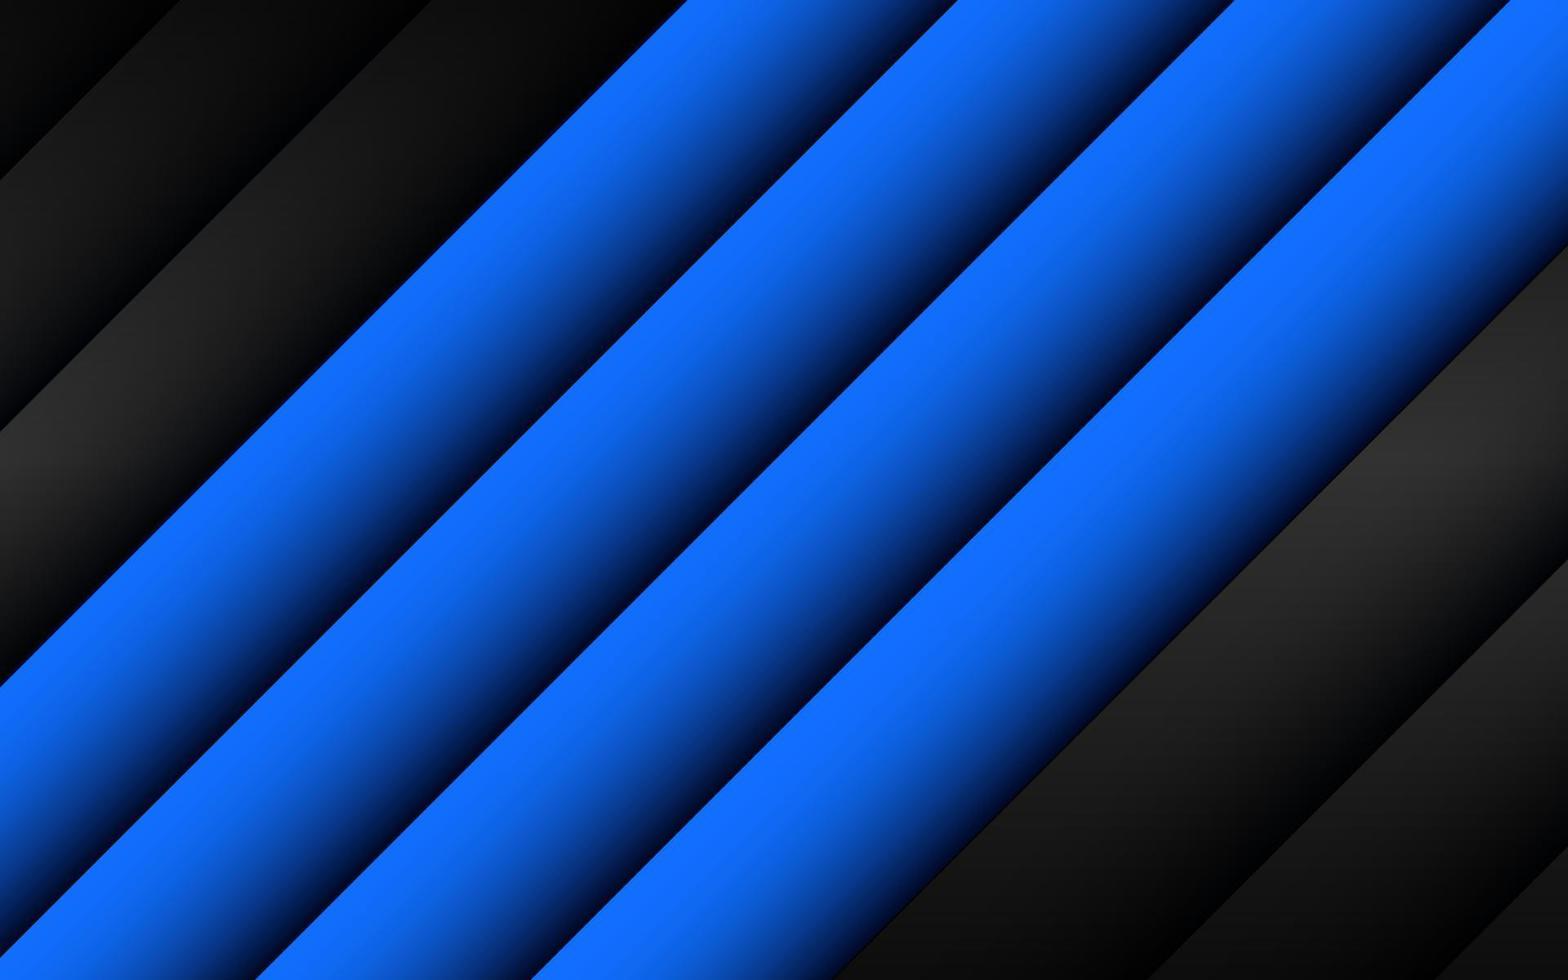 abstrakt blå mörkgrå triangel skugglinje geometrisk med tomt utrymme design bakgrund vektor